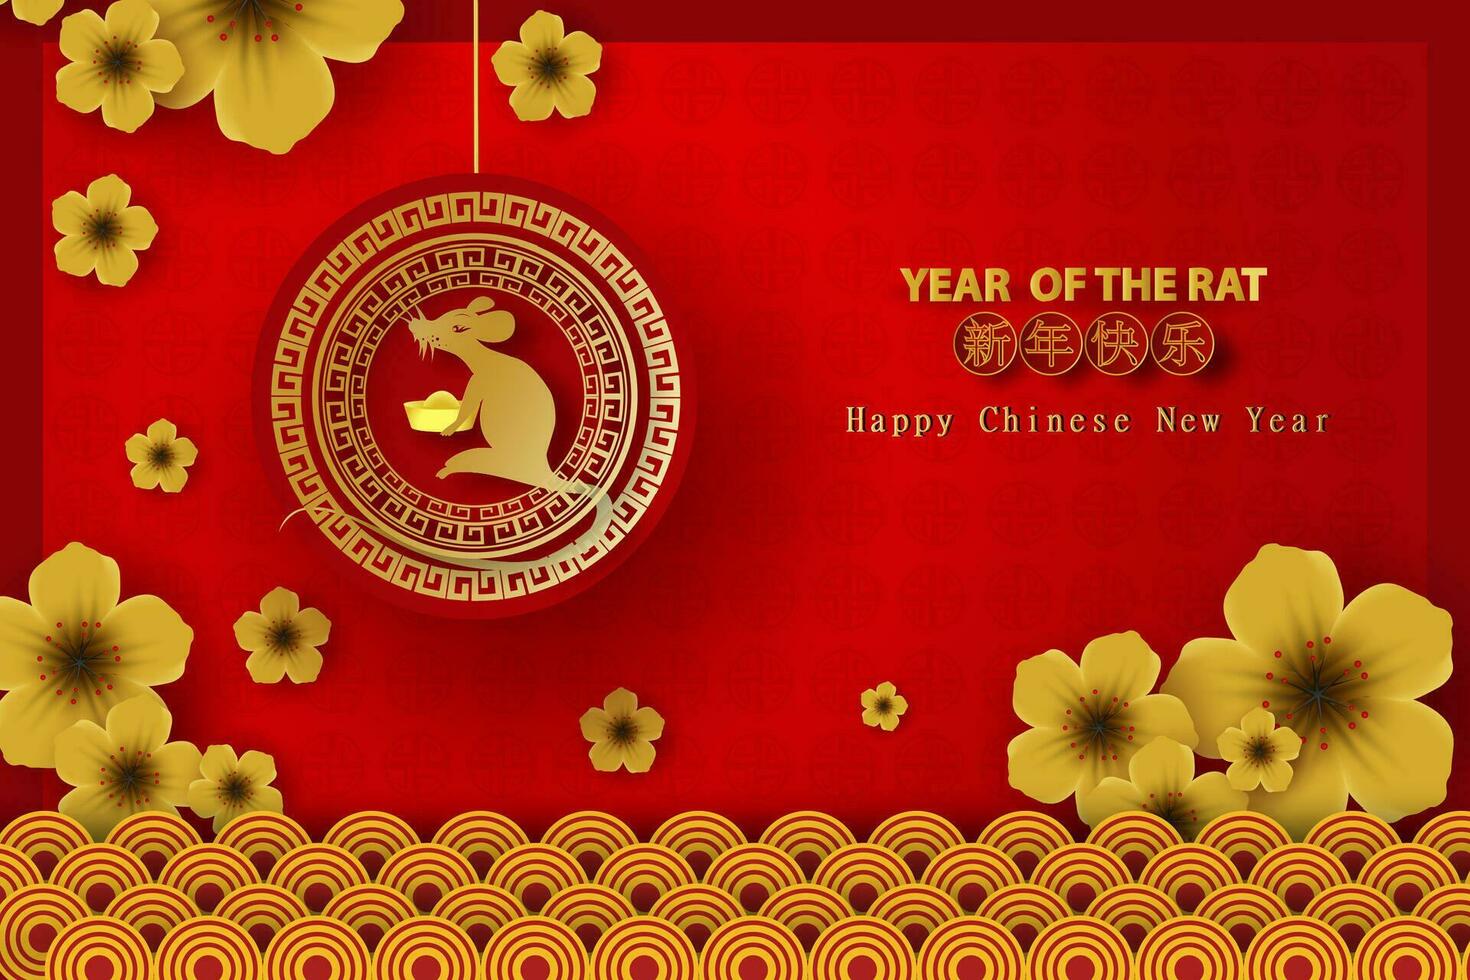 2020 feliz chinês Novo ano tradução do a rato tipografia dourado personagens Projeto para tradicional festival feriado saudações cartão.criativo papel cortar e construir estilo conceito.vetor ilustração vetor